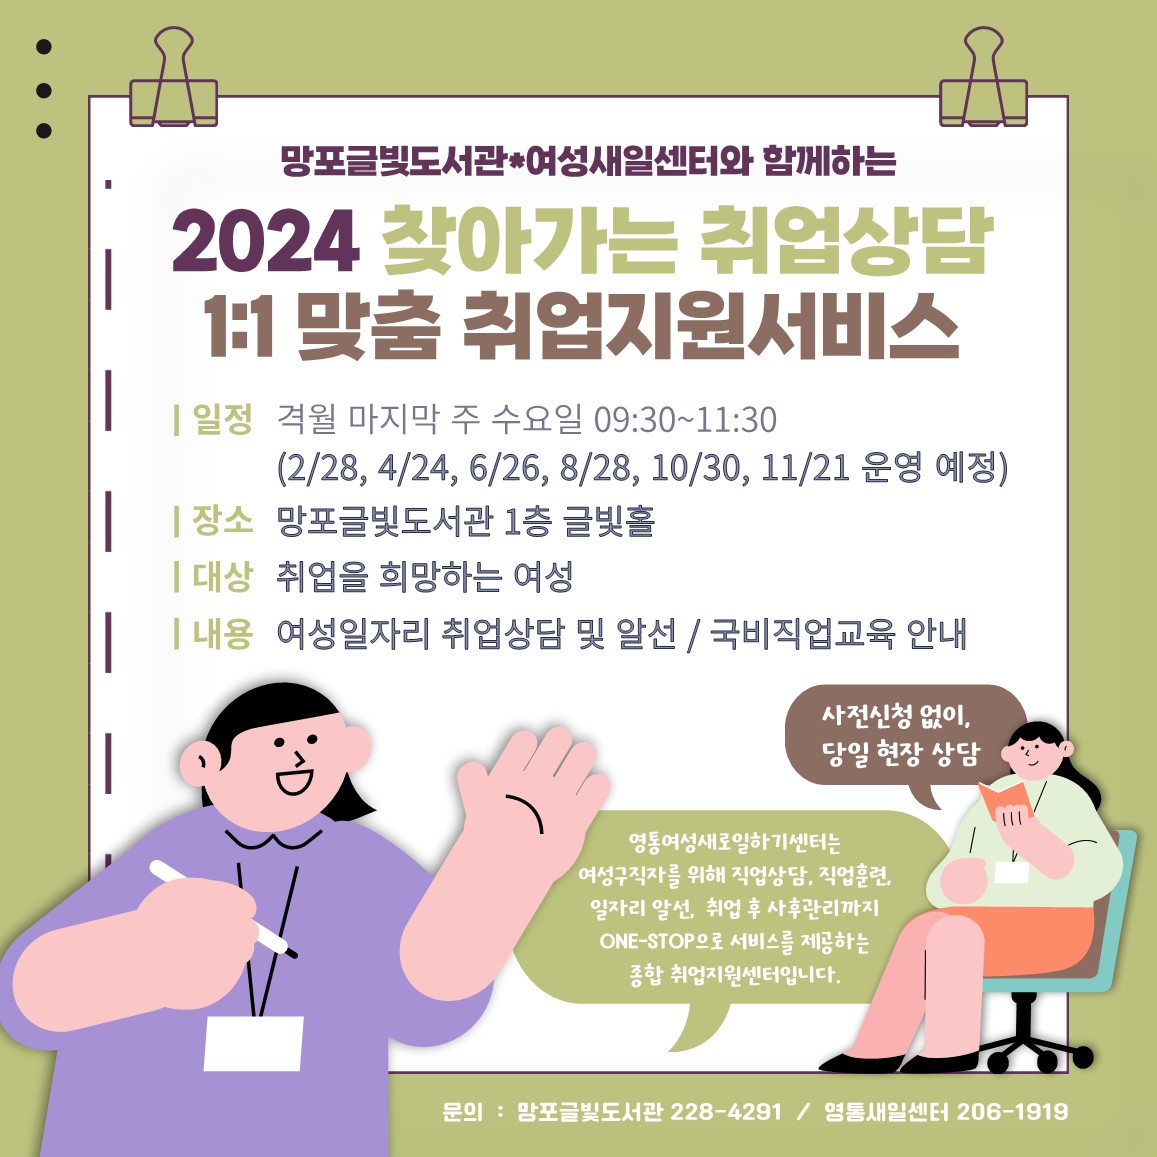 2024찾아가는새일센터홍보물_망포글빛도서관_1.jpg